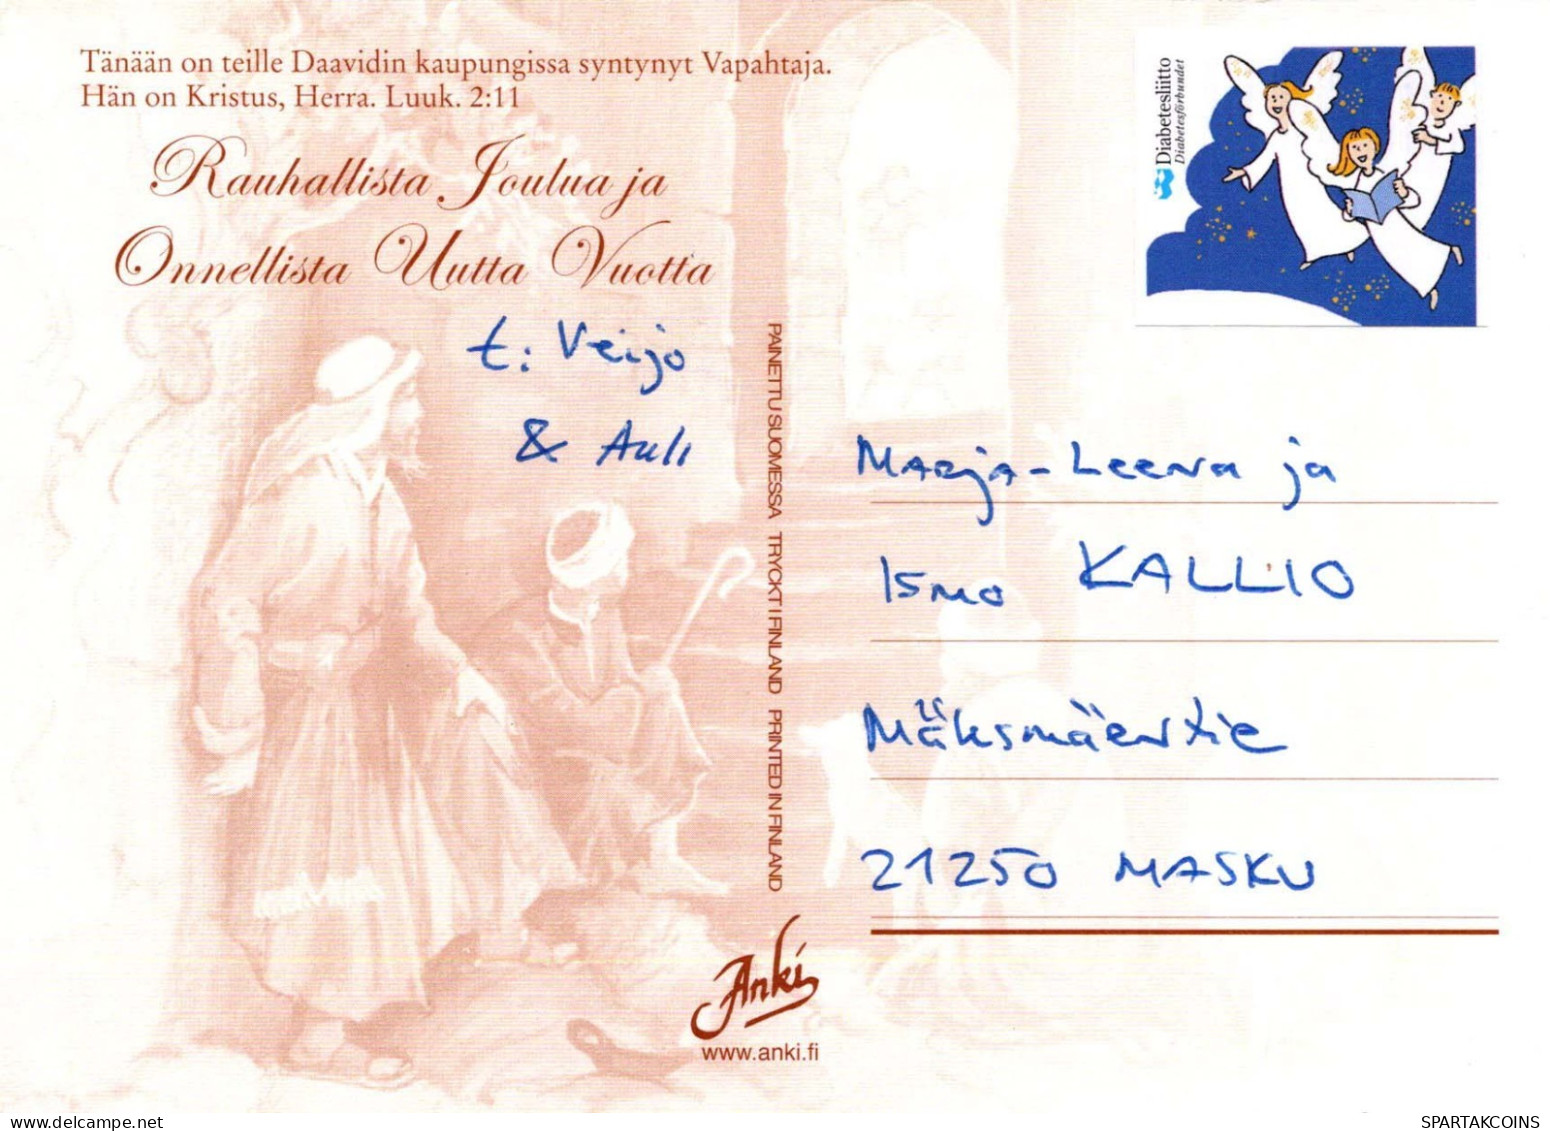 Vergine Maria Madonna Gesù Bambino Natale Religione Vintage Cartolina CPSM #PBB854.A - Maagd Maria En Madonnas